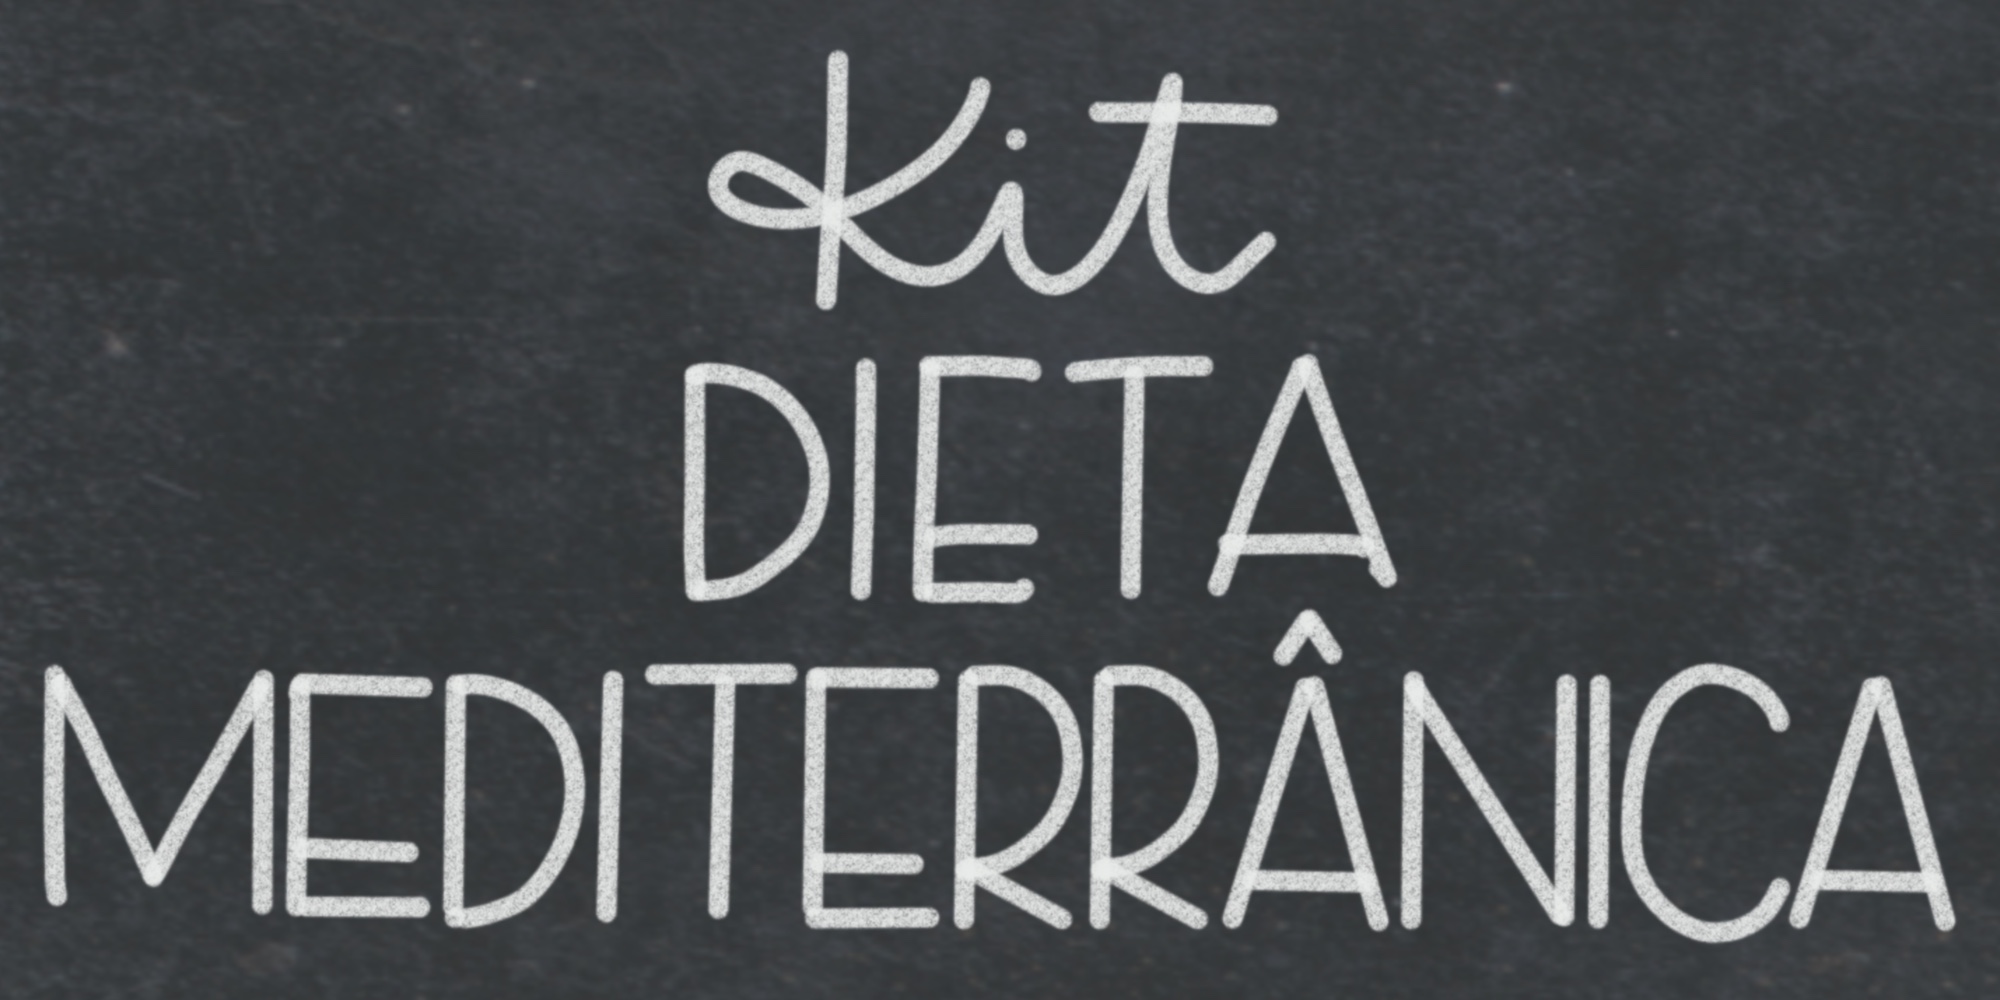 Kit Dieta Mediterranica